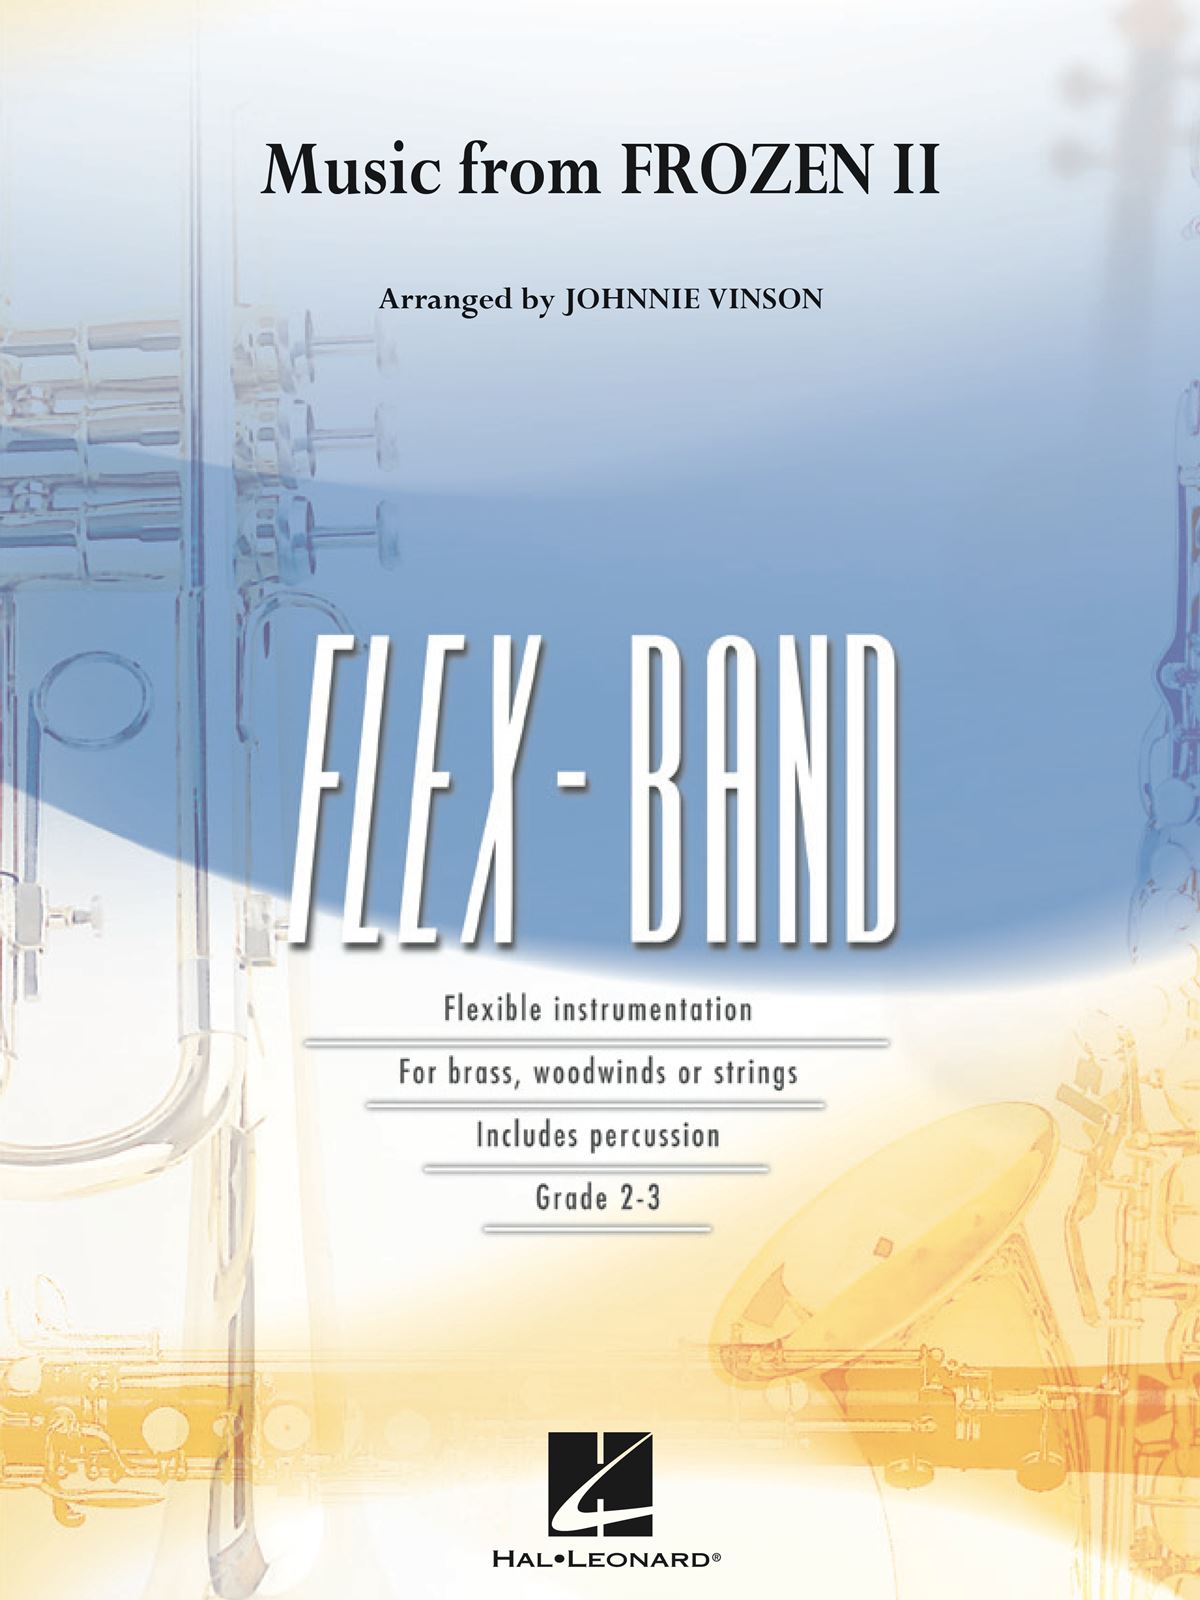 Robert Lopez Kristen Anderson-Lopez: Music from Frozen II: Flexible Band: Score